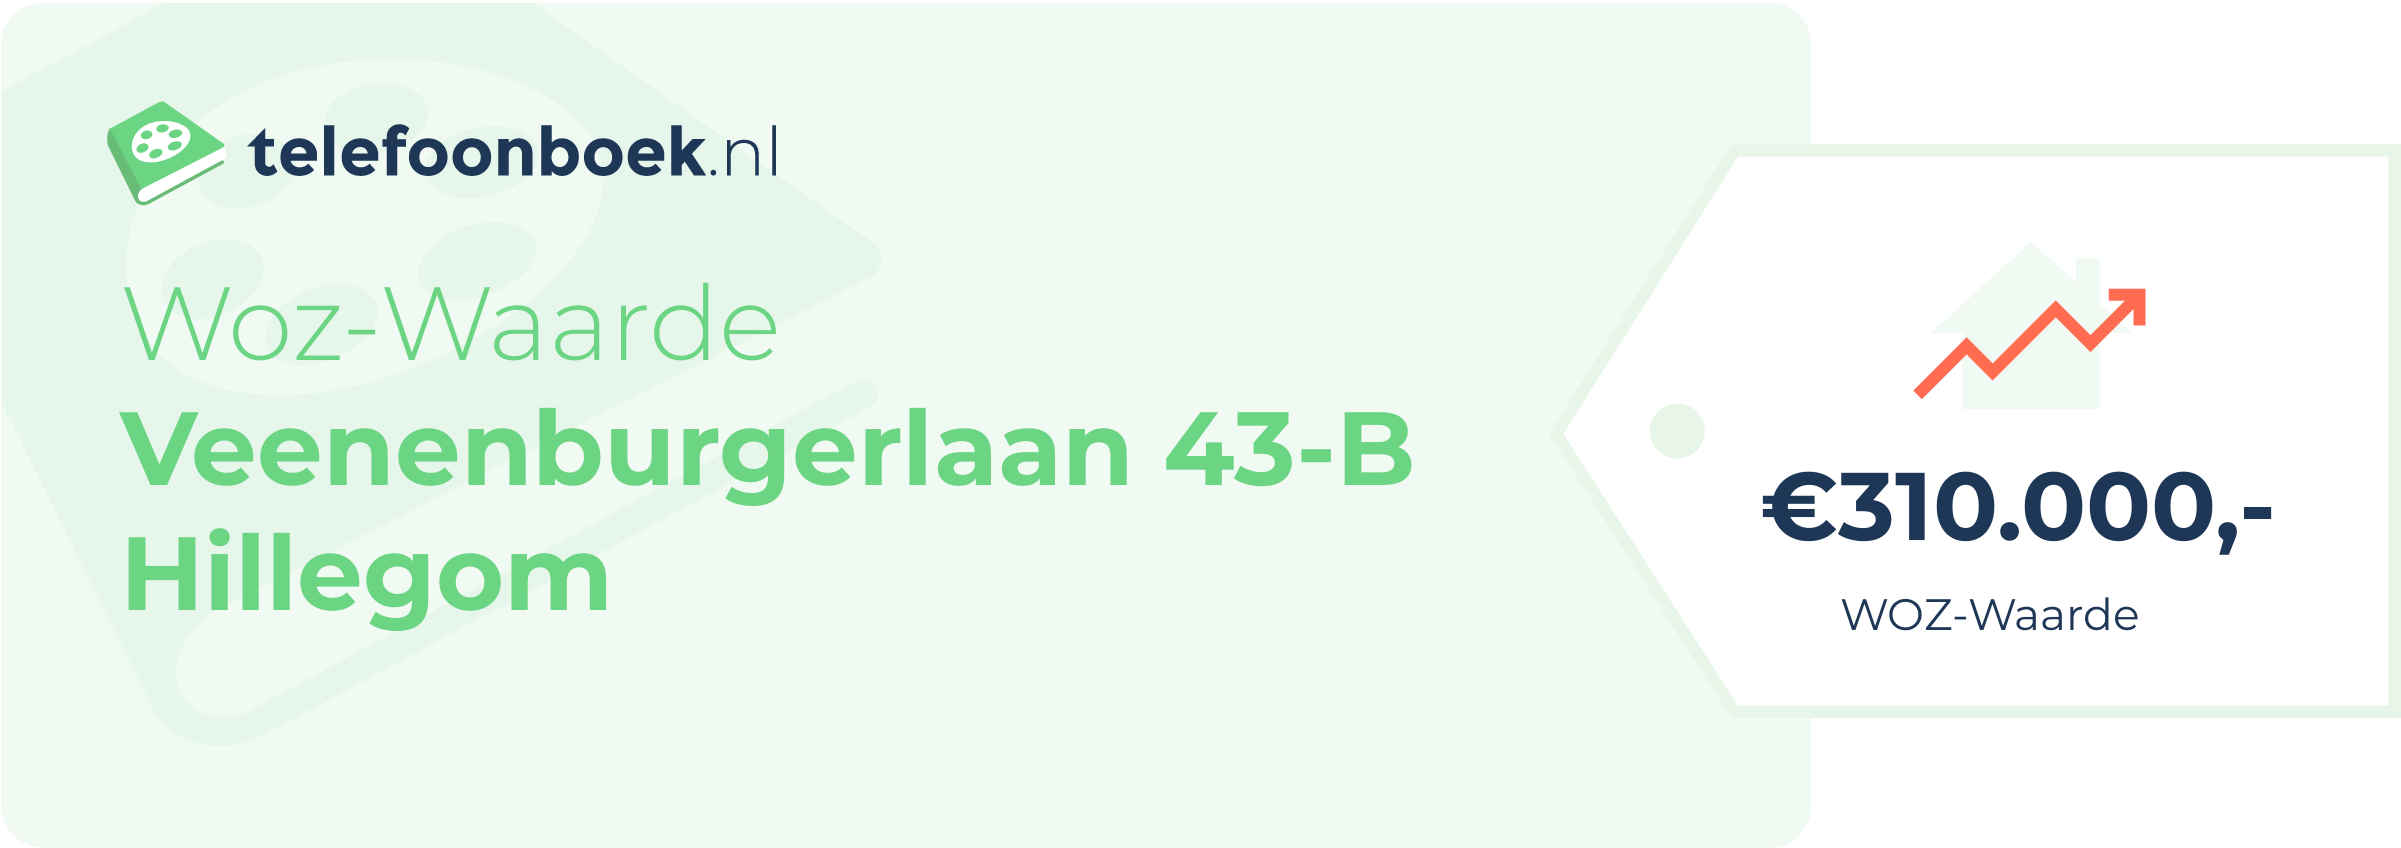 WOZ-waarde Veenenburgerlaan 43-B Hillegom